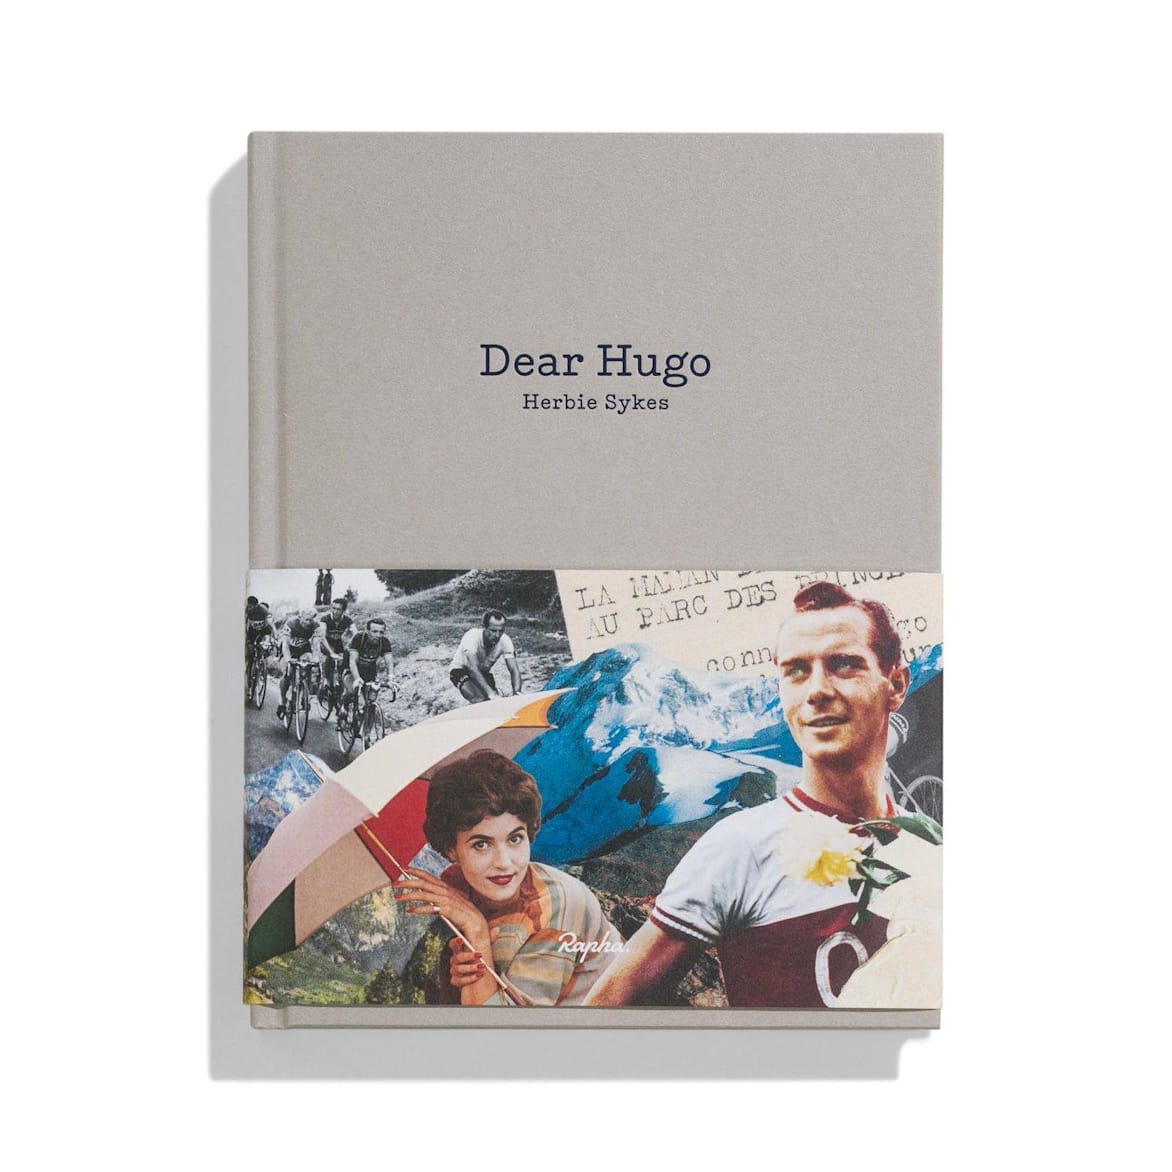 Dear Hugo